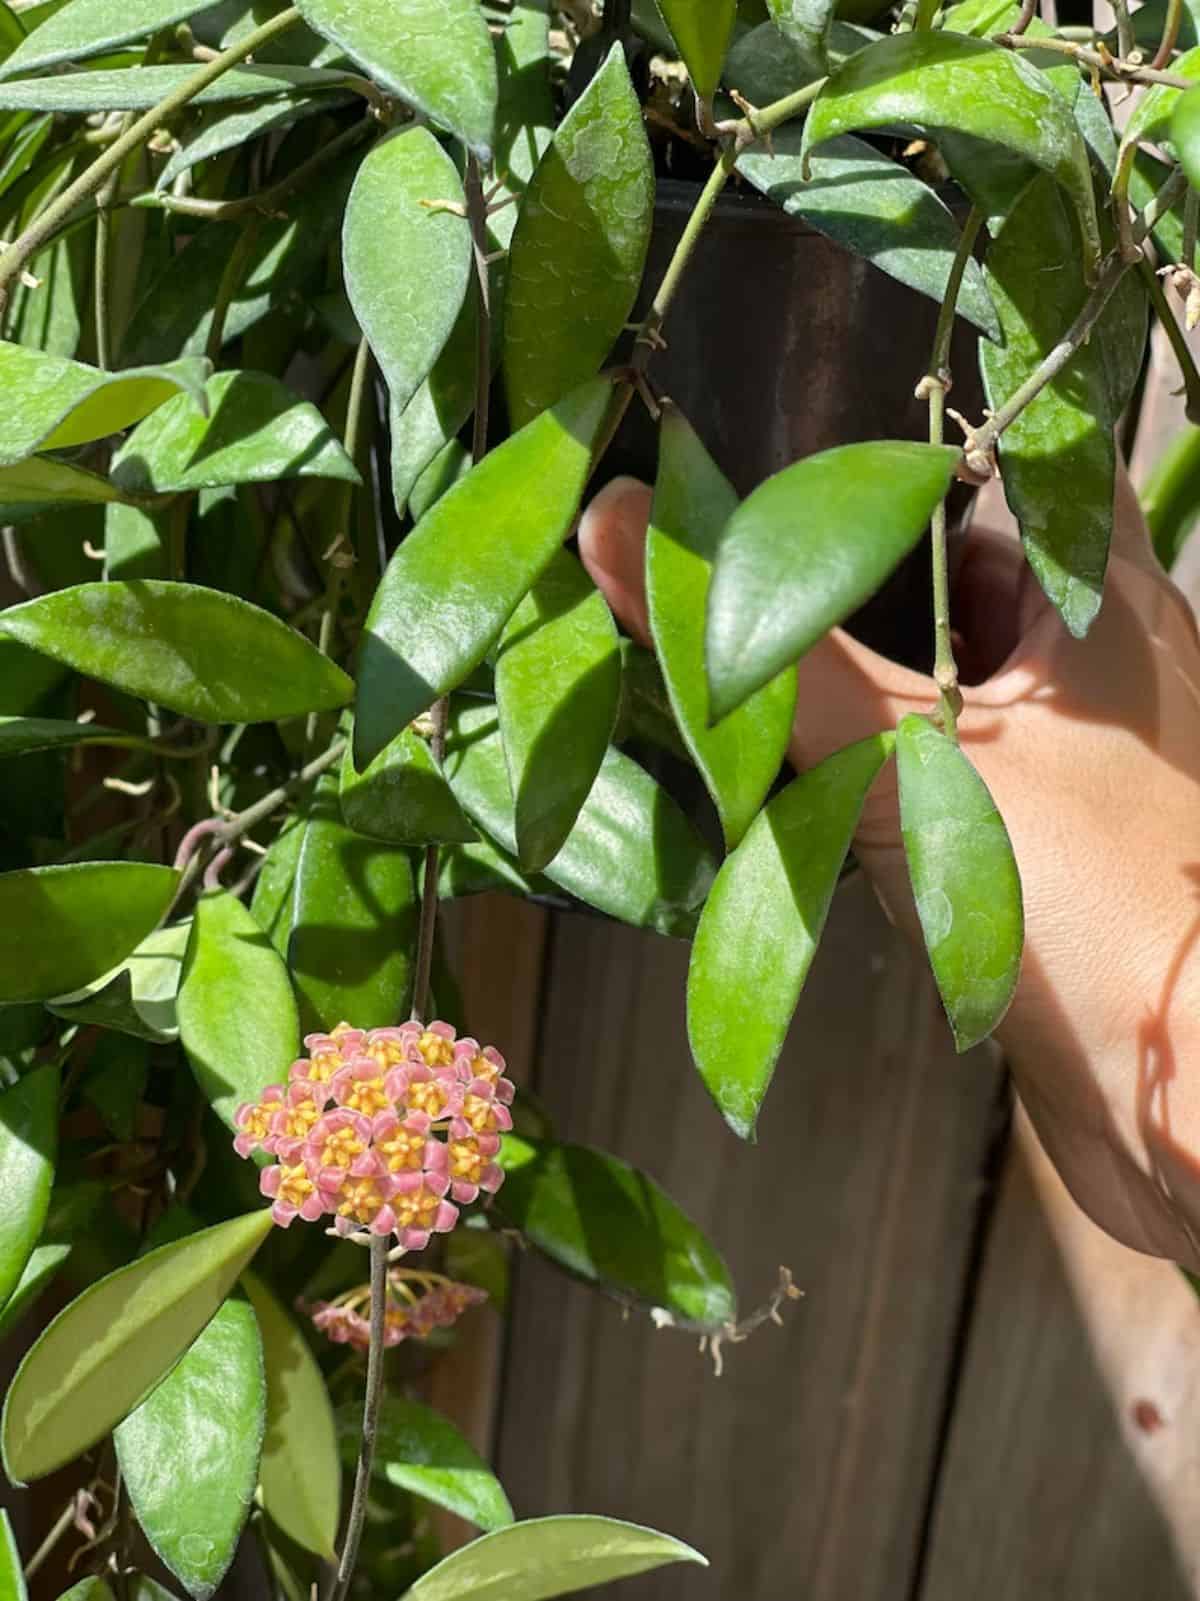 Hoya bilobata grows on a fence on a sunny day.